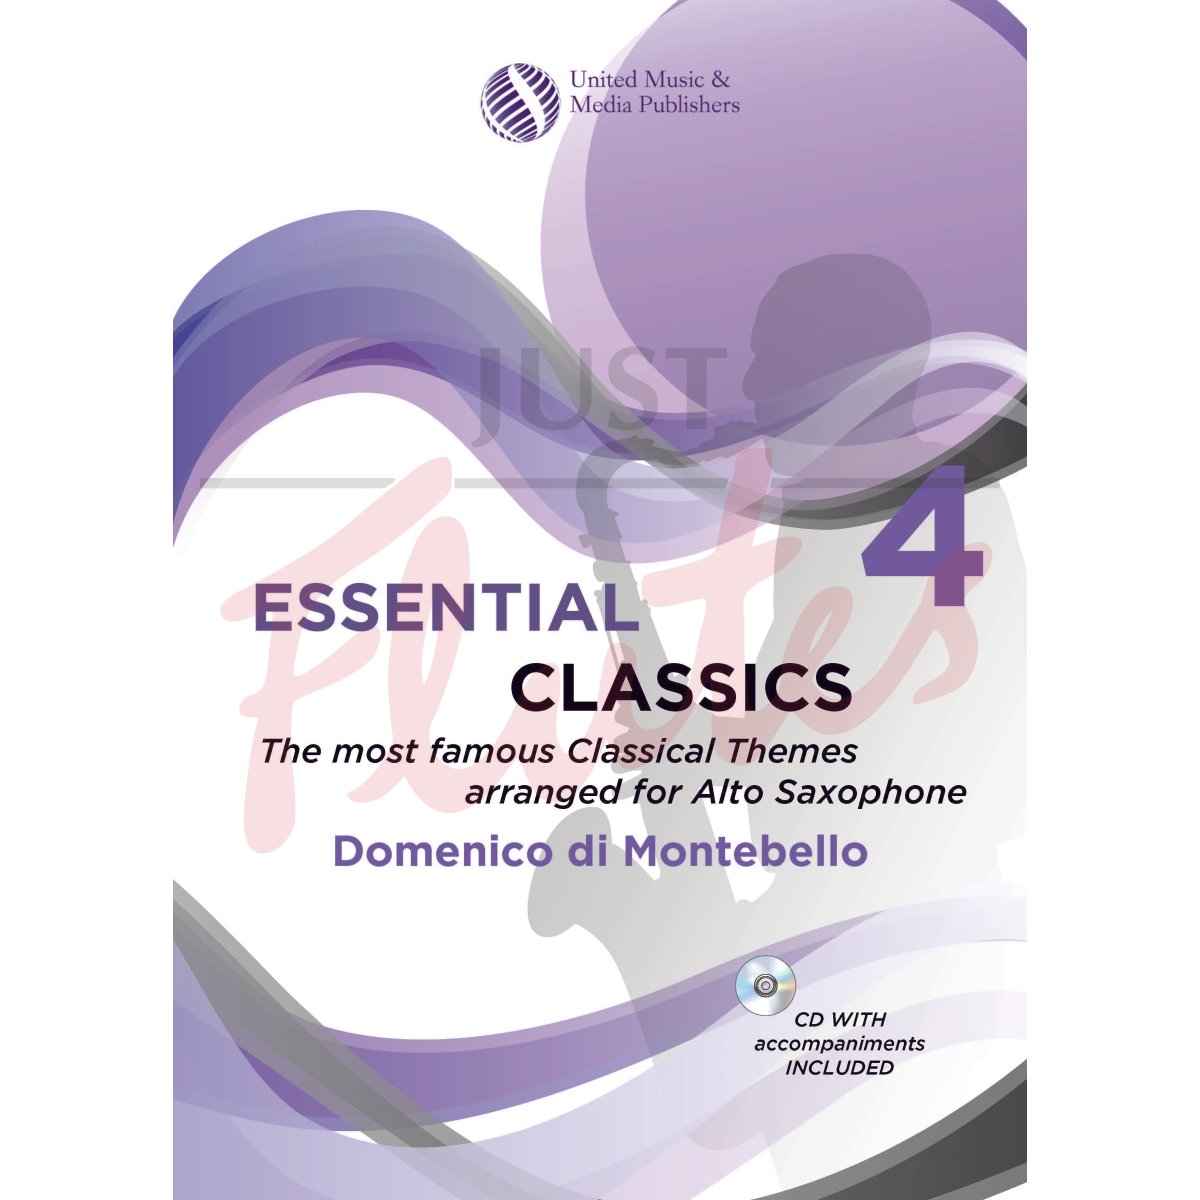 Essential Classics 4 for Saxophone